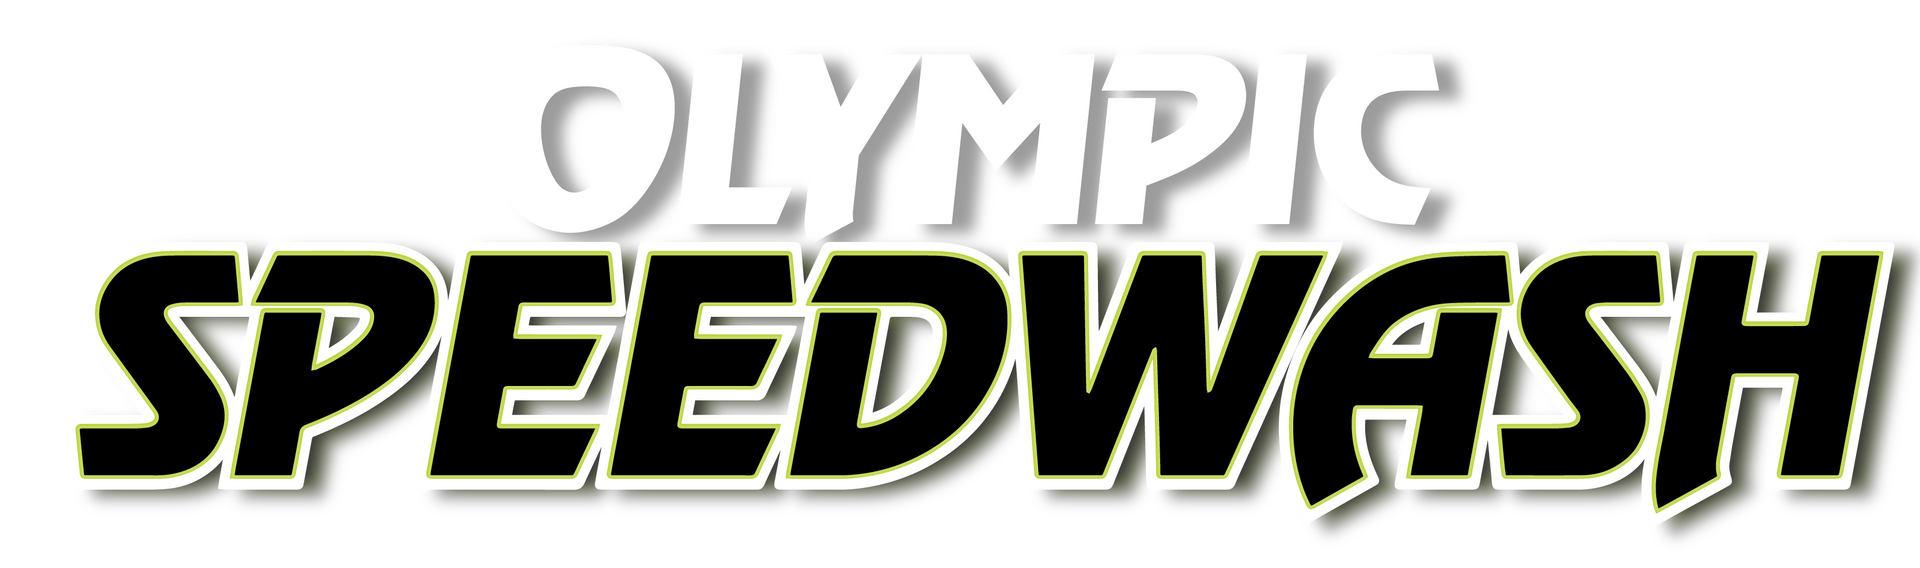 Catalina Speedwash Logo